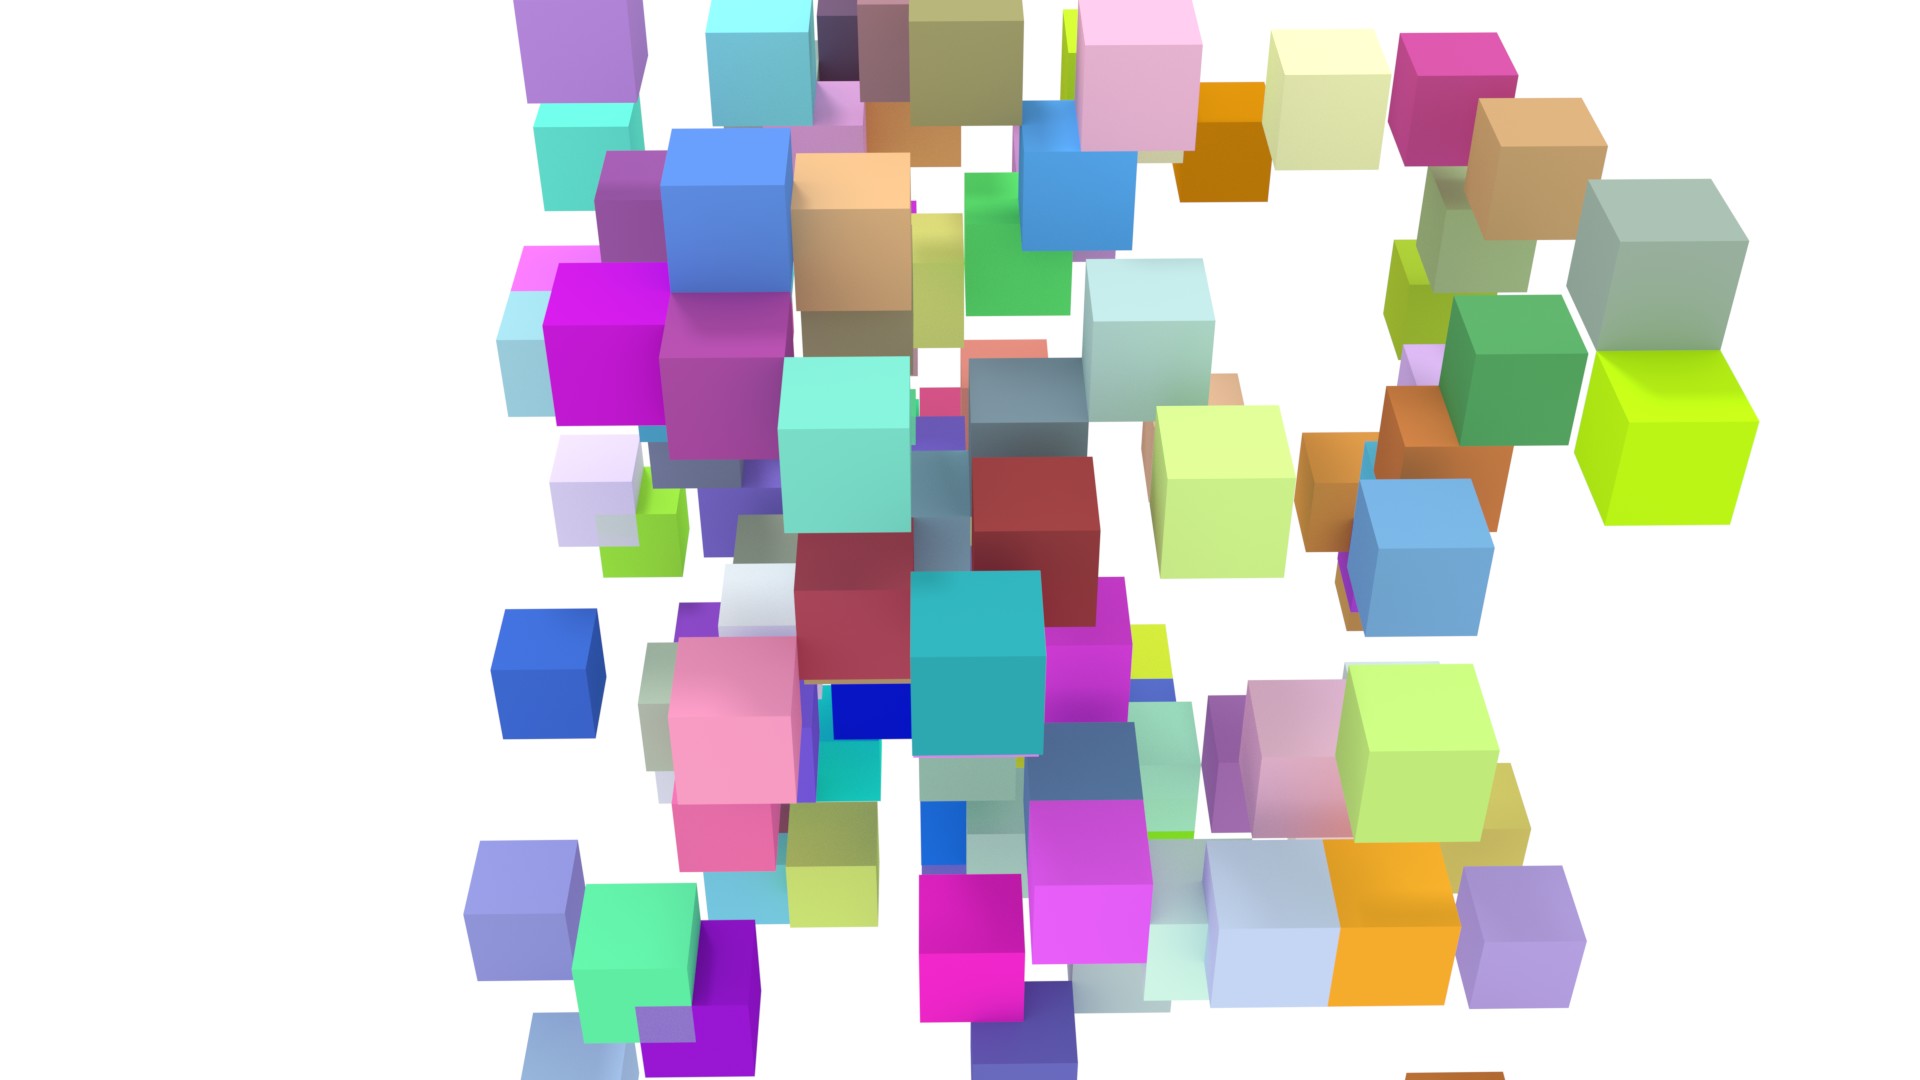 Blender Python Random Cube Animation Tutorial - Wallpaper - Video  Generation - Andrei Clinciu